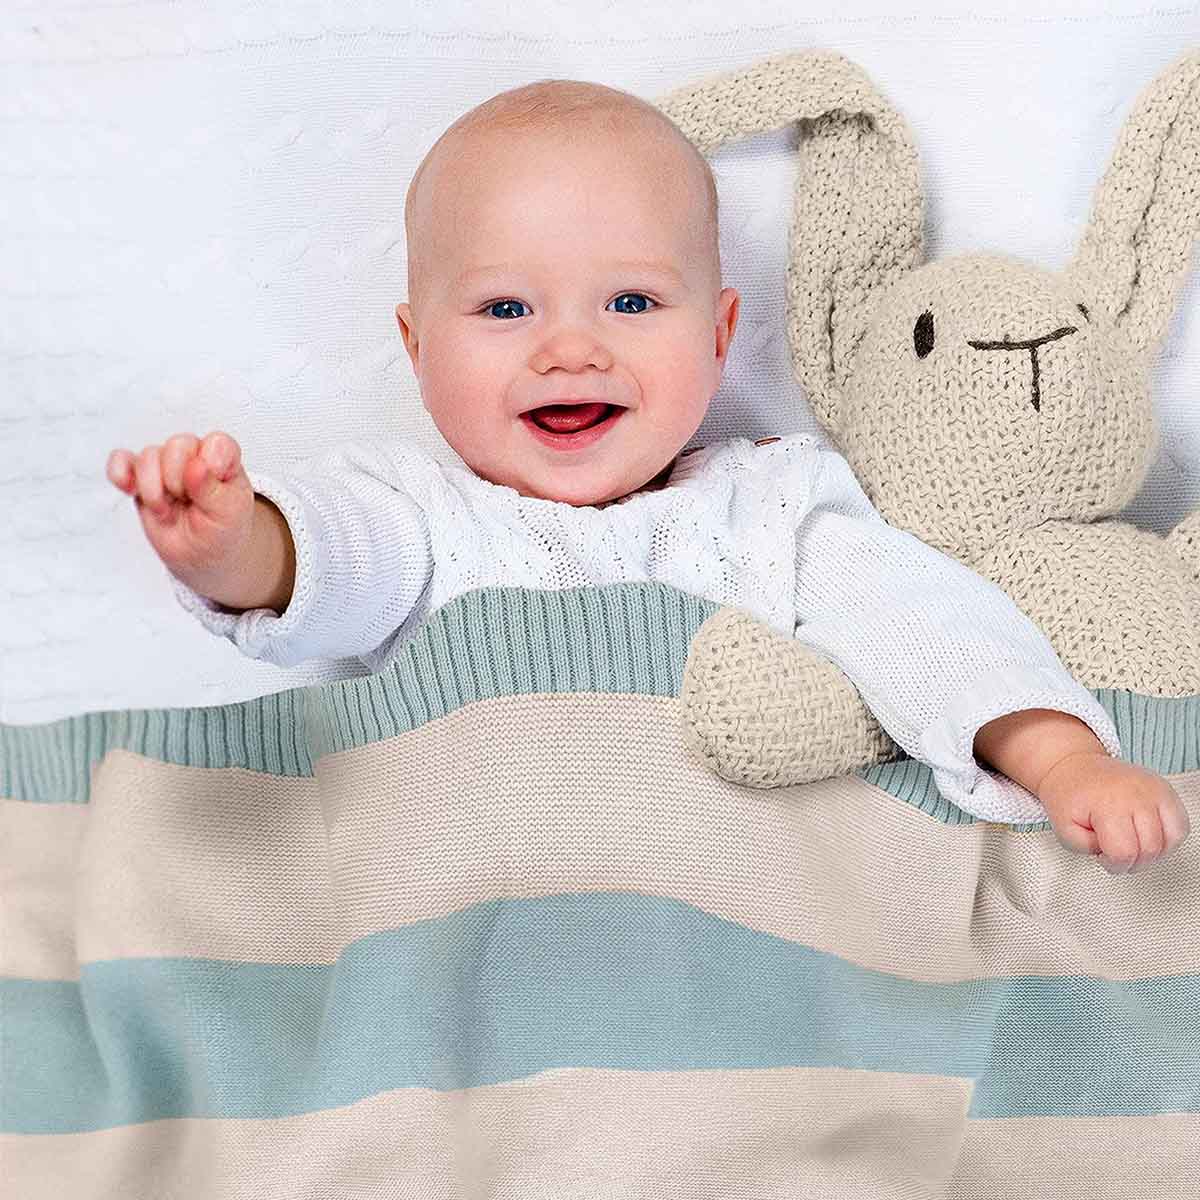 Glückliches Baby liegt im Bett, eingedeckt in mint-natur gestreifter Bio-Baumwolldecke. Es lächelt und winkt in die Kamera.